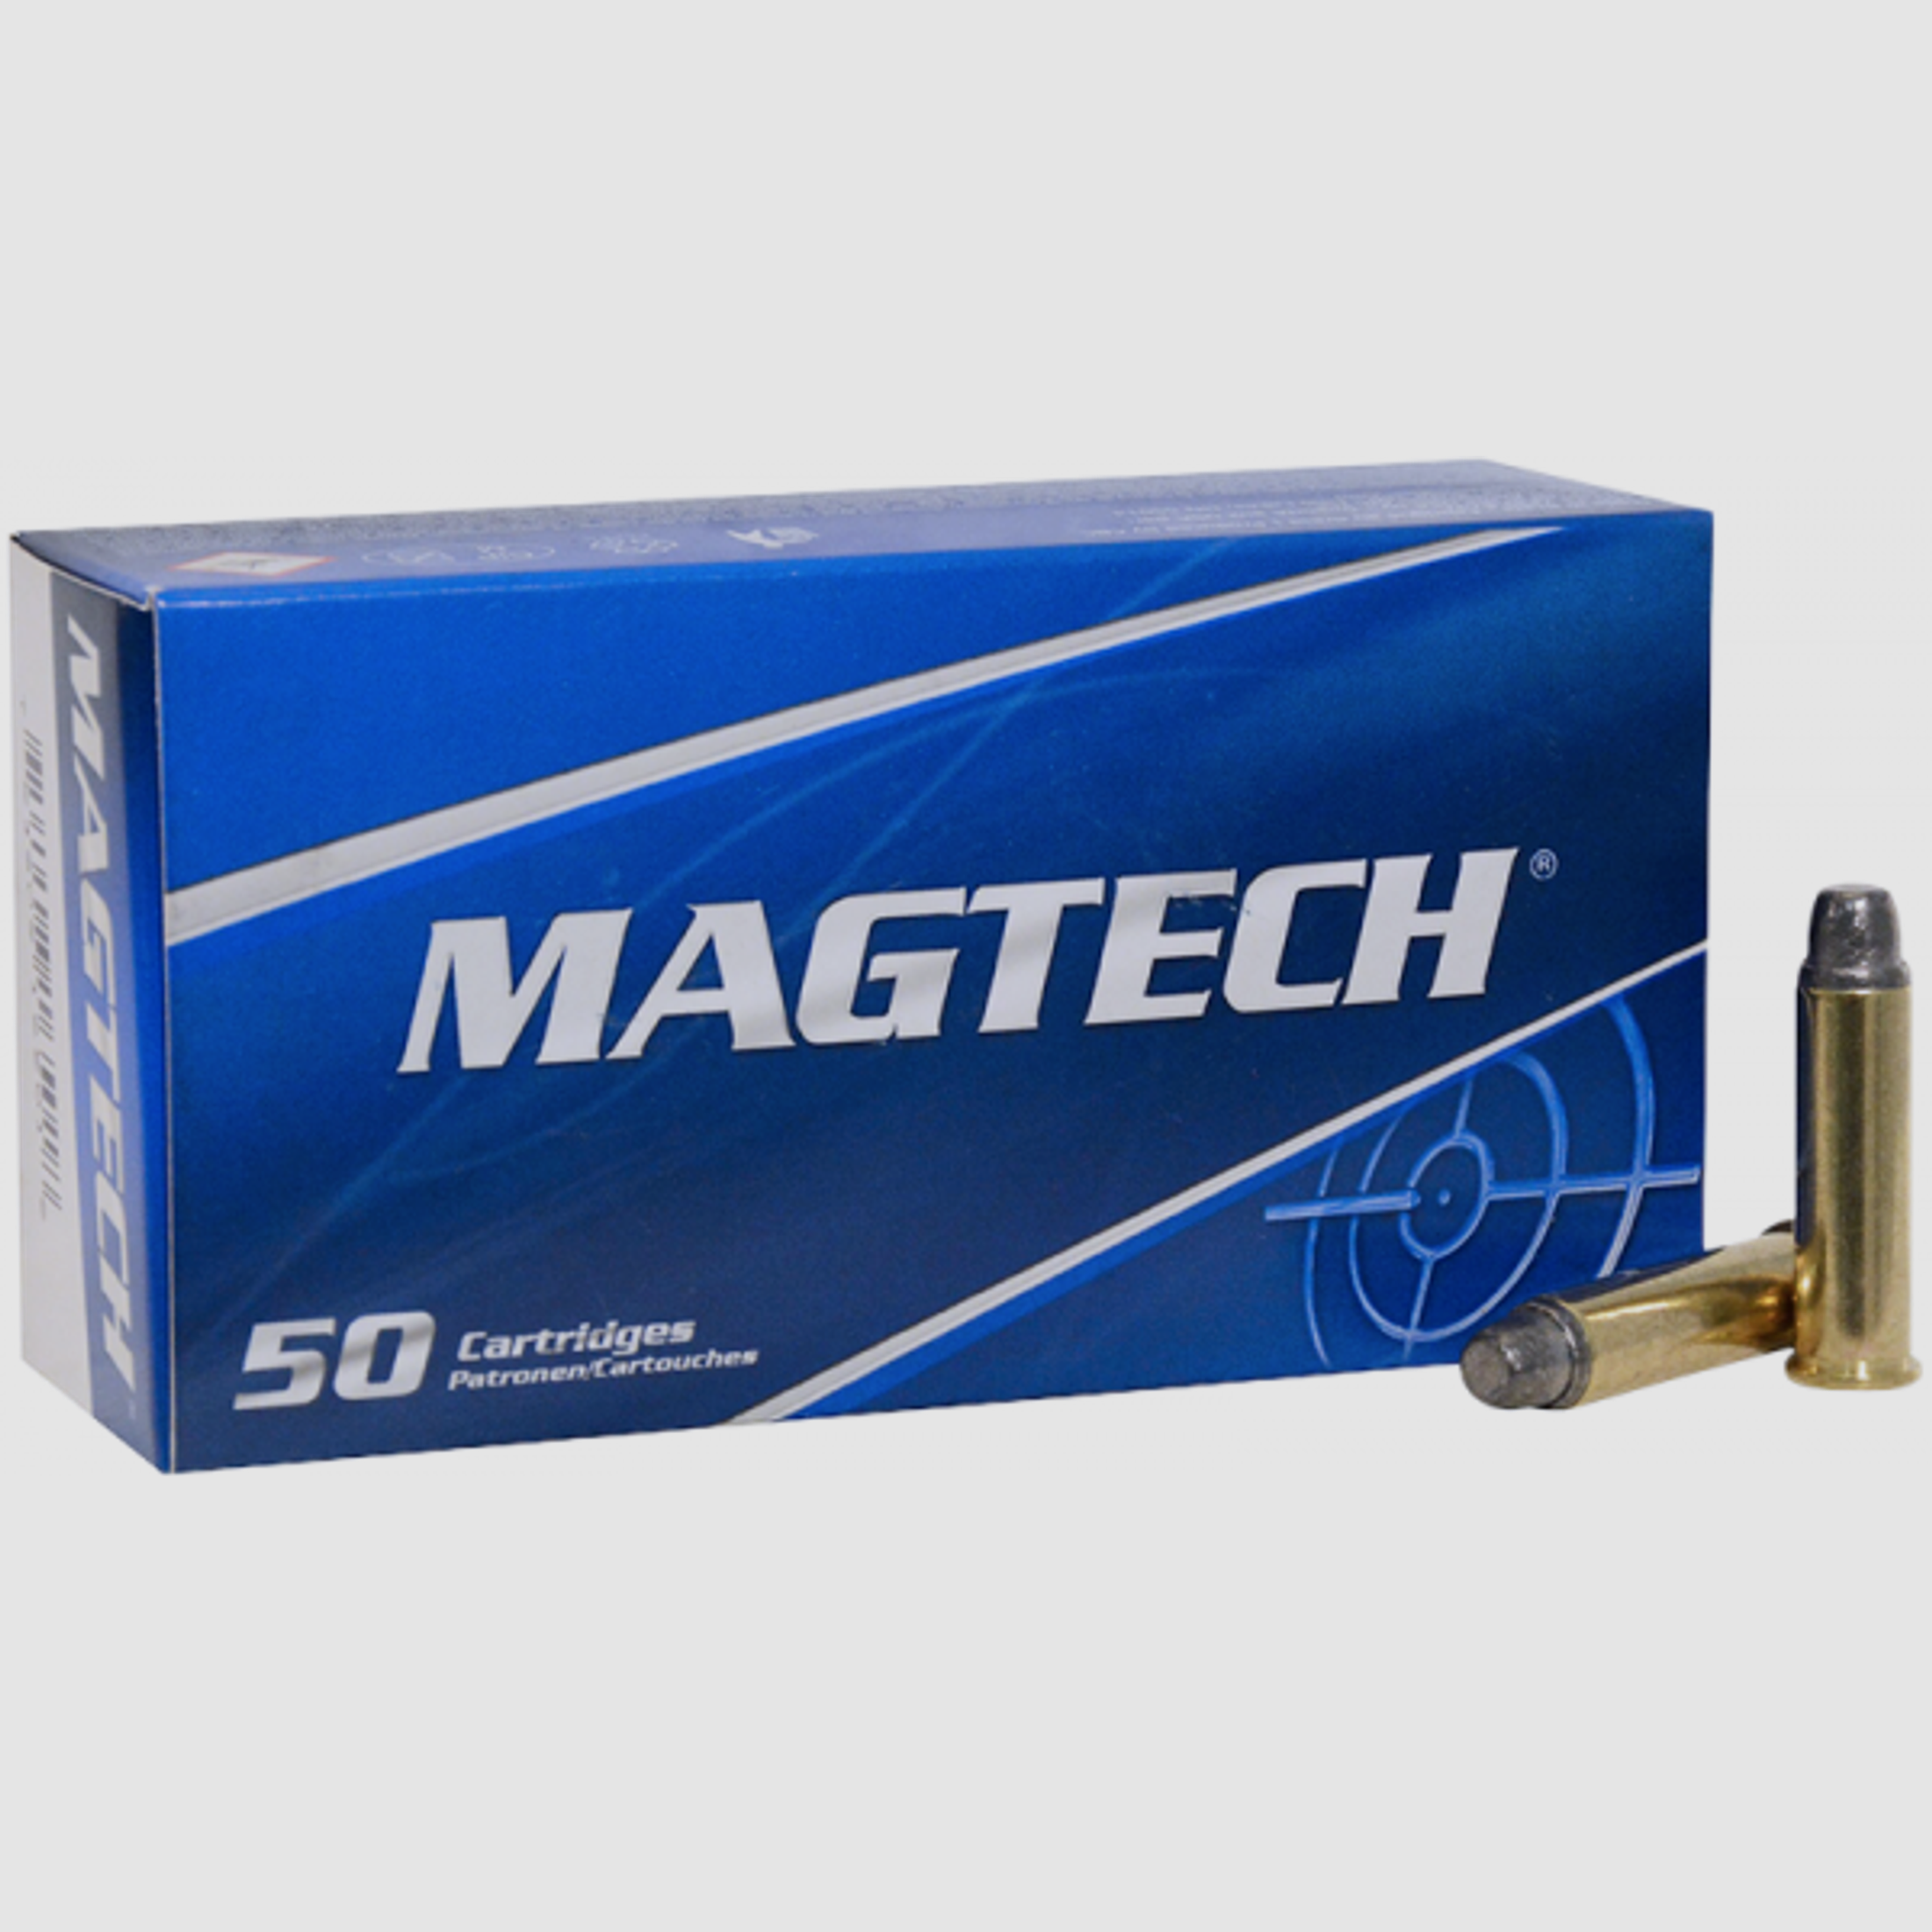 Magtech Standard .38 Special SWC 158 grs Revolverpatronen